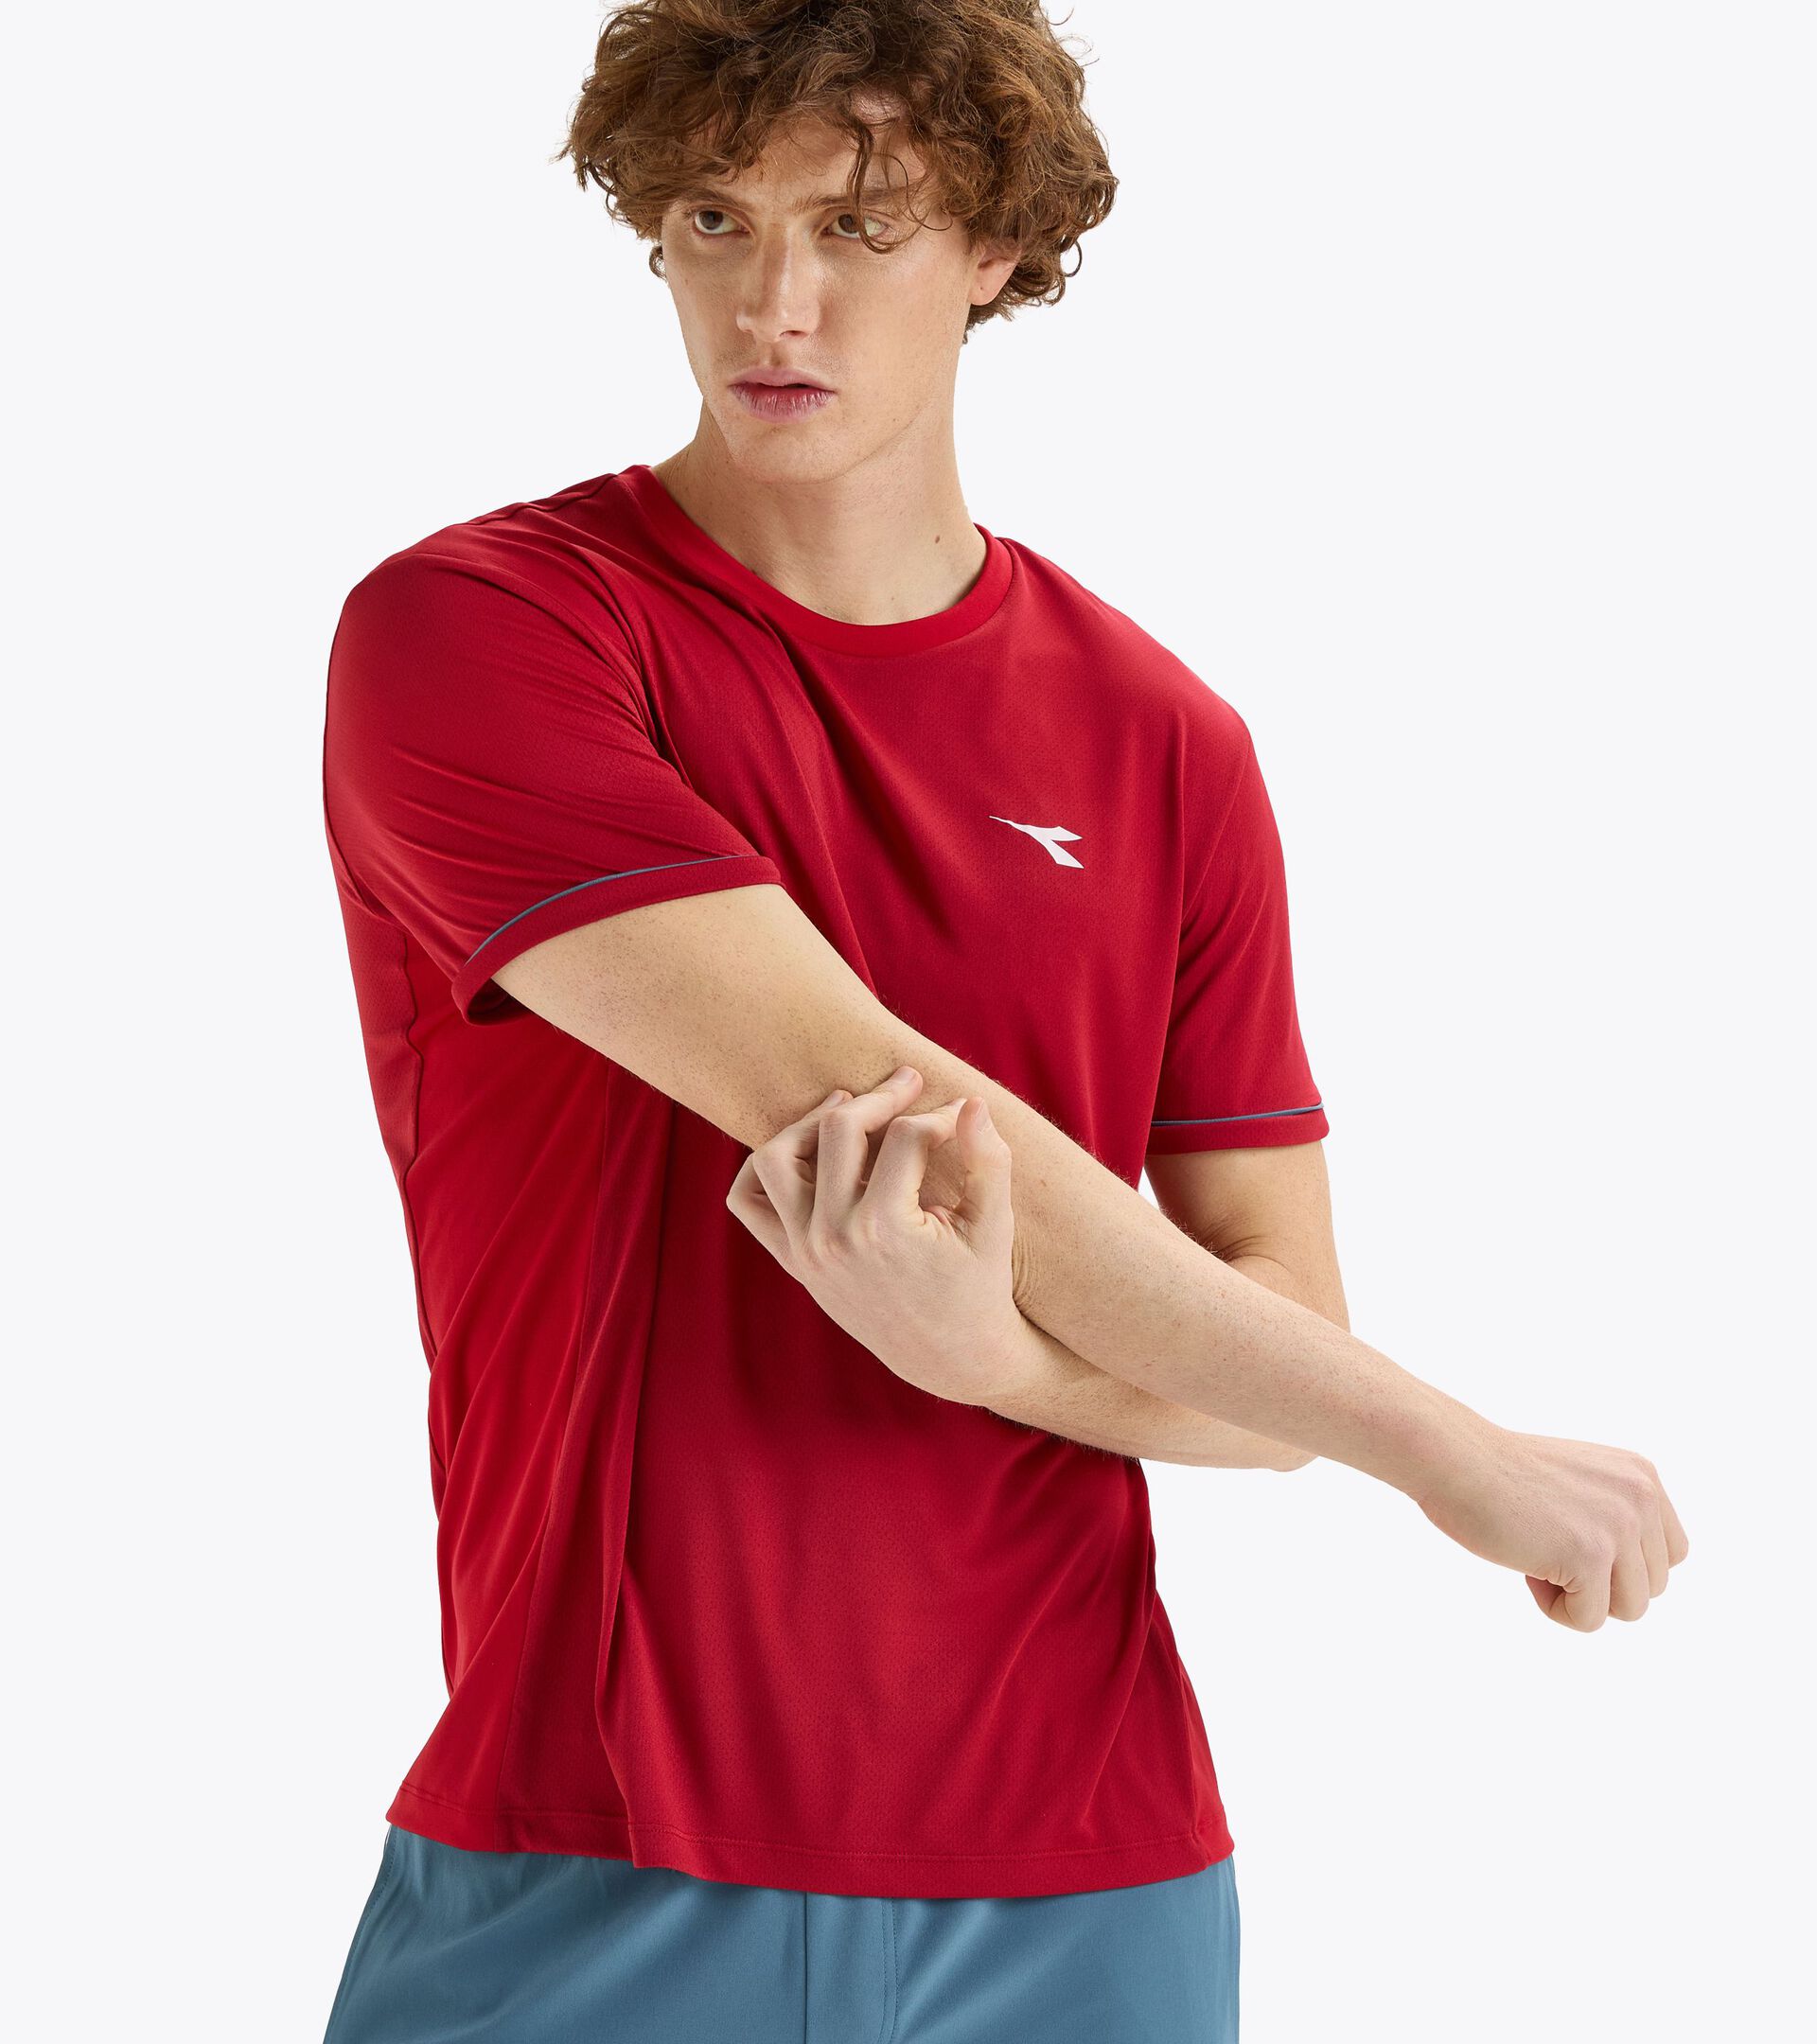 Tennis t-shirt - Men’s
 SS T-SHIRT TENNIS CHILI PEPPER - Diadora